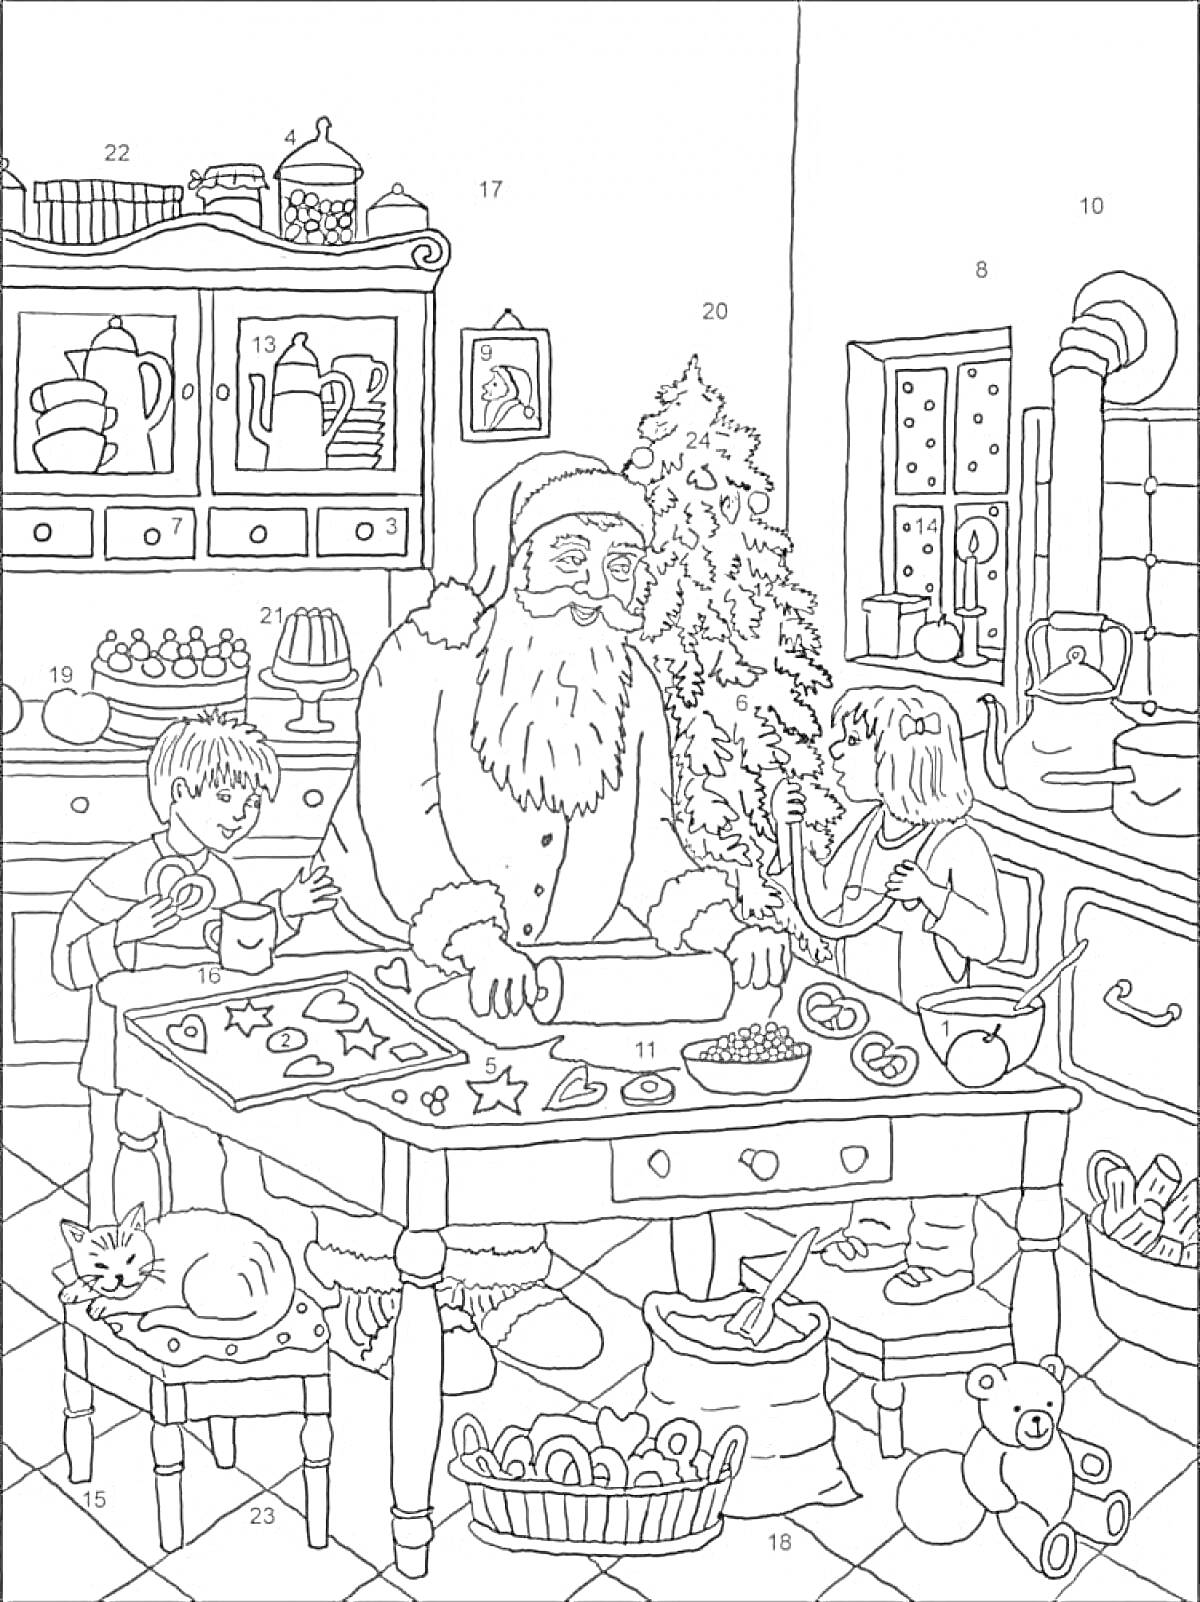 Раскраска Санта Клаус с детьми на кухне, выпечка печенья, елка, игрушки, ночник, кот, окно, шкаф с посудой